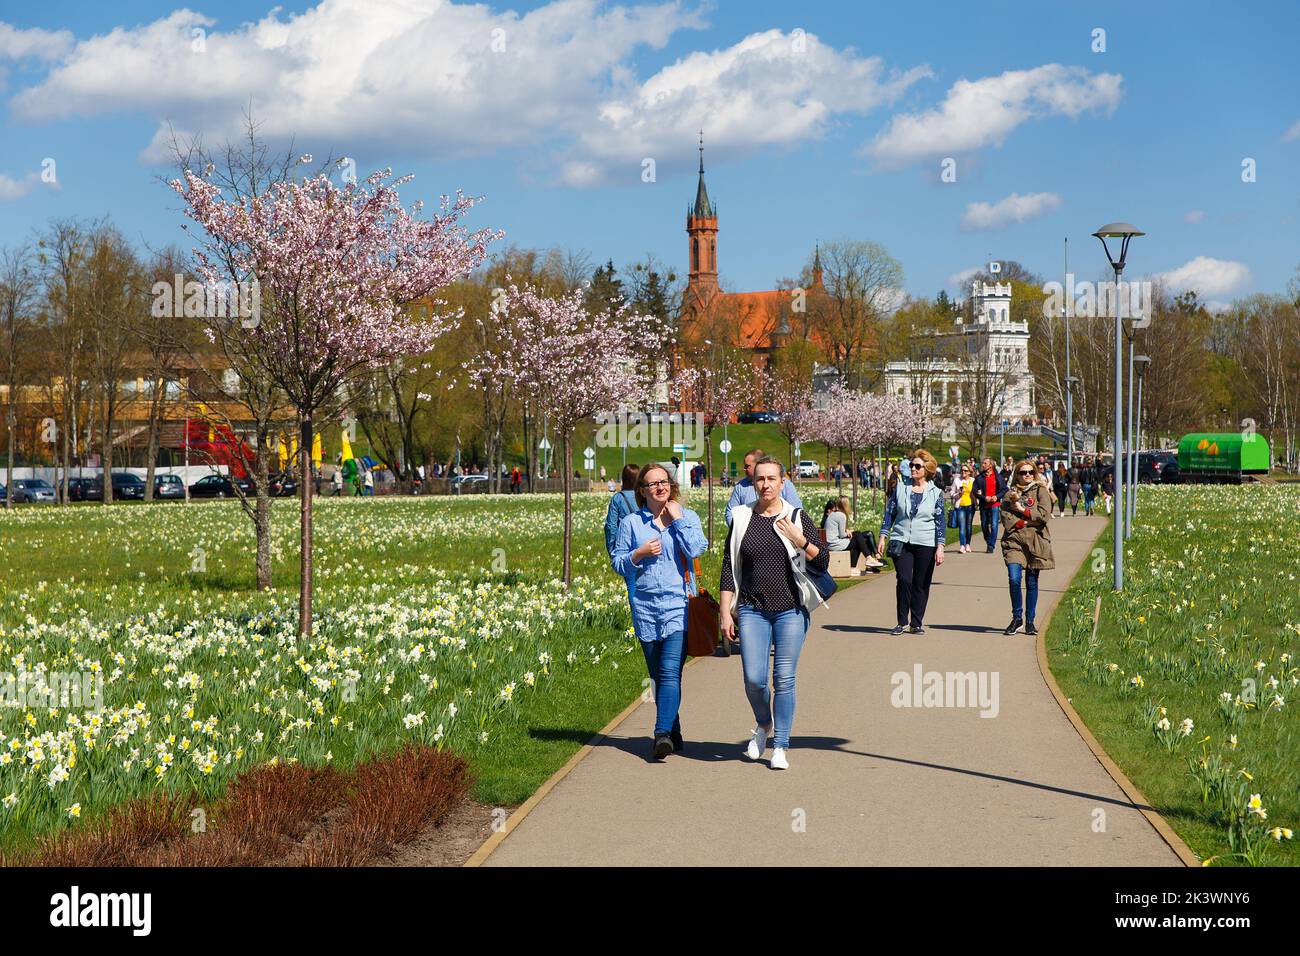 Druskininkai, Lituanie - 21 avril 2018: Les touristes et les résidents de la ville se promènent dans le parc, qui traditionnellement chaque printemps fleurissent des milliers de d. Banque D'Images